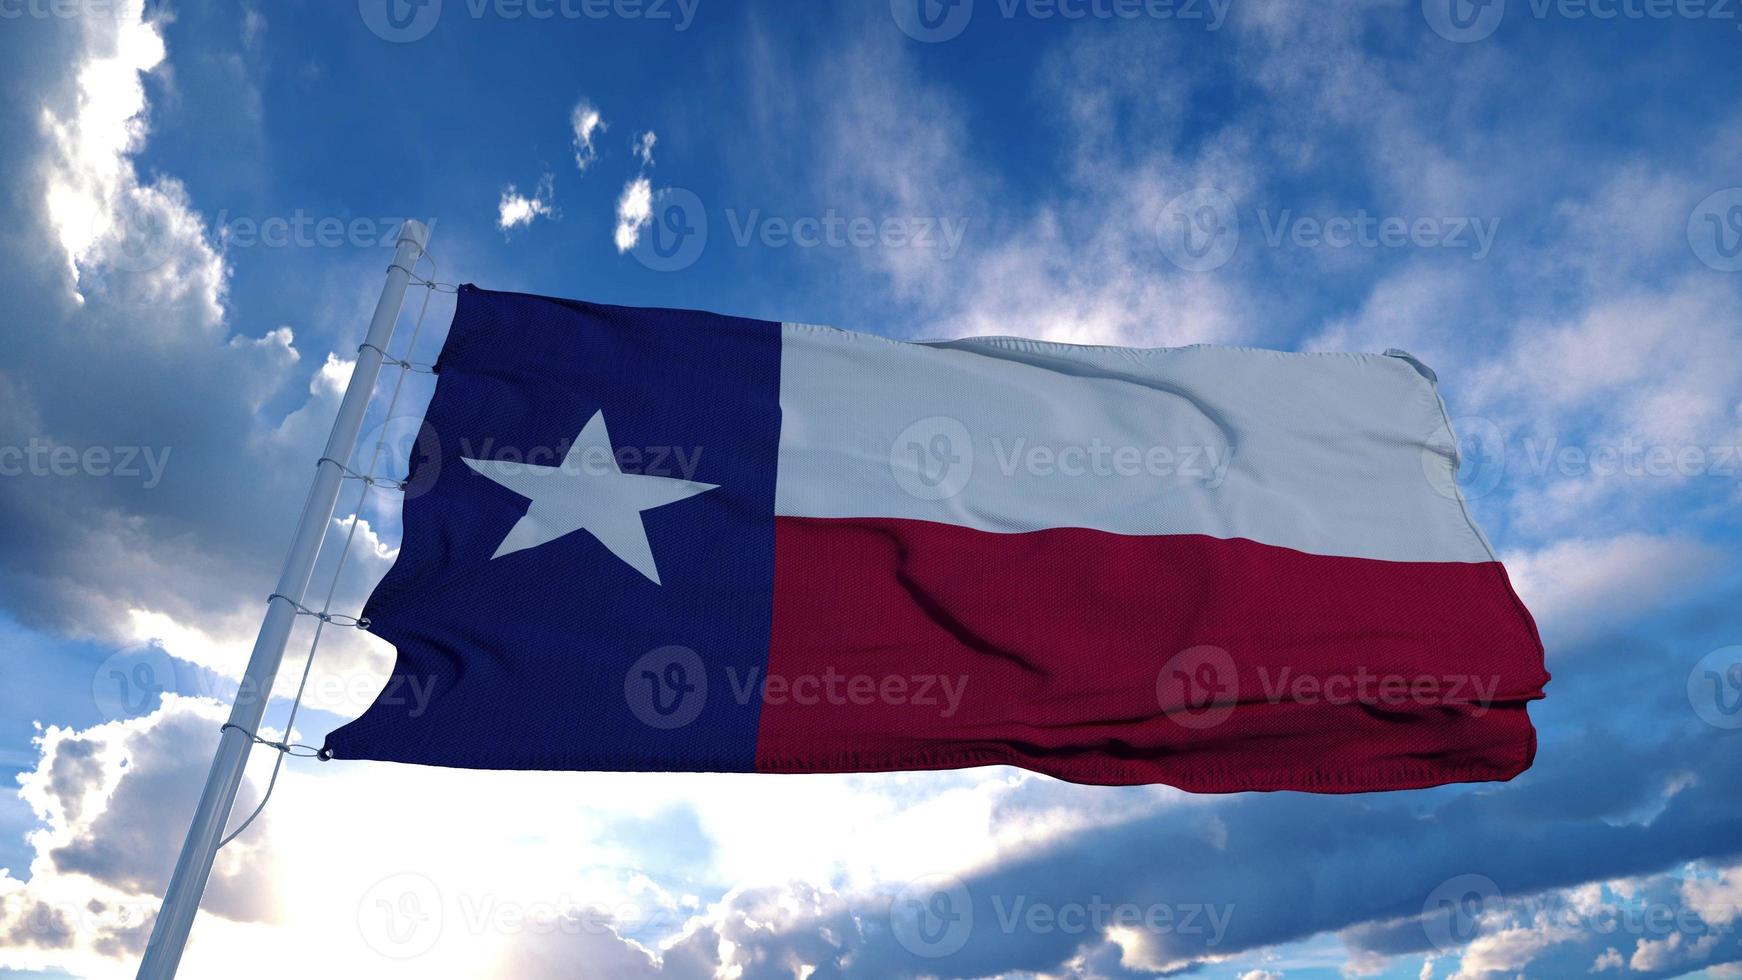 Texas vlag op een vlaggenmast zwaaiend in de wind, blauwe hemelachtergrond. 3D-rendering foto